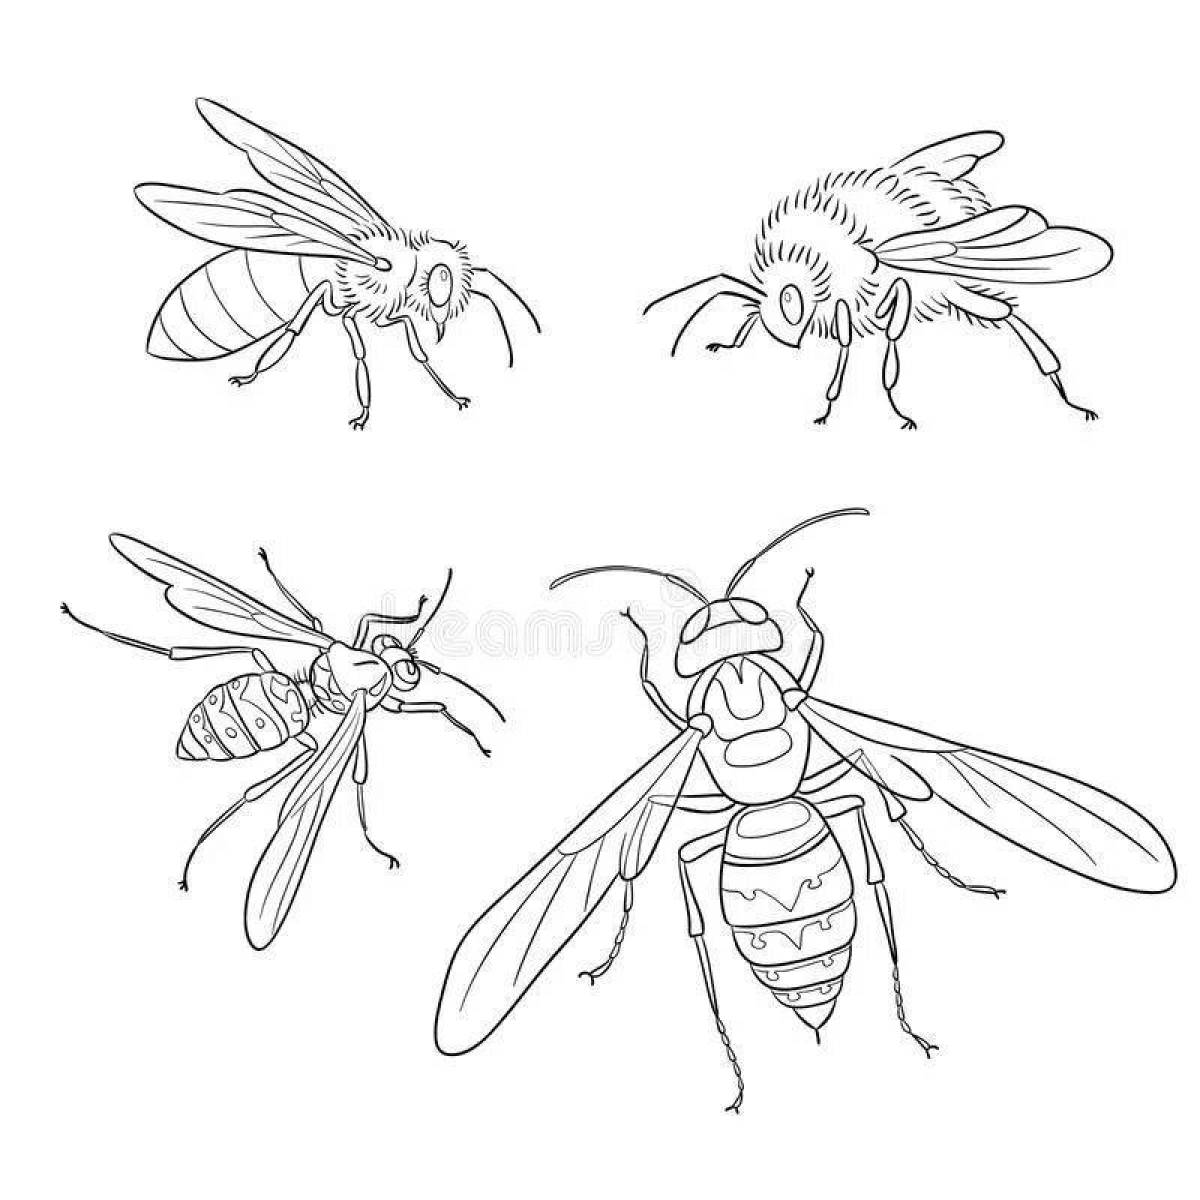 Пчела и Оса раскраска